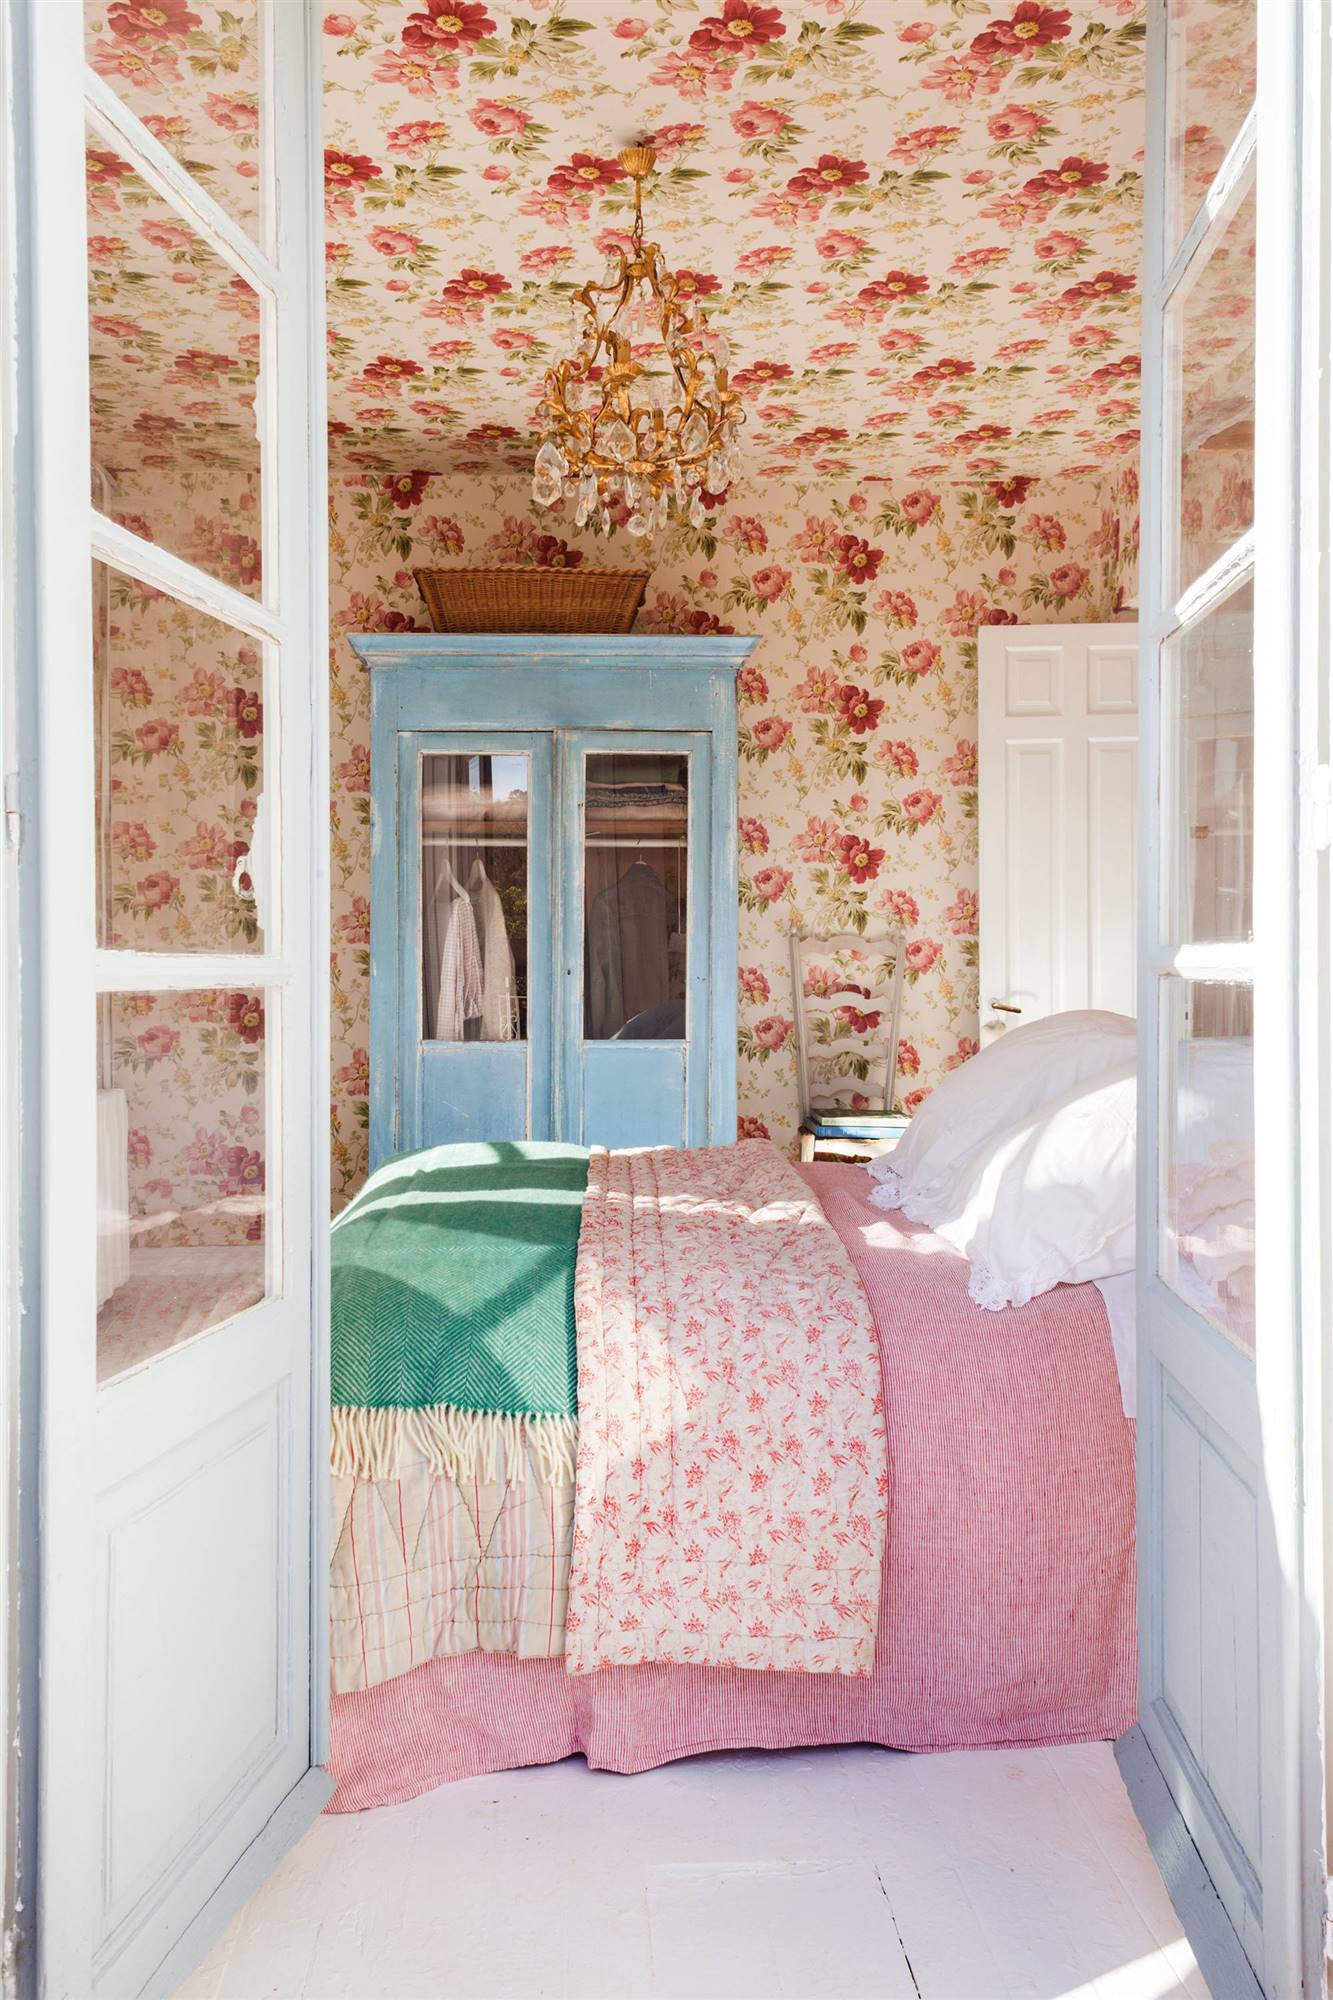 Dormitorio con papel pintado floral.